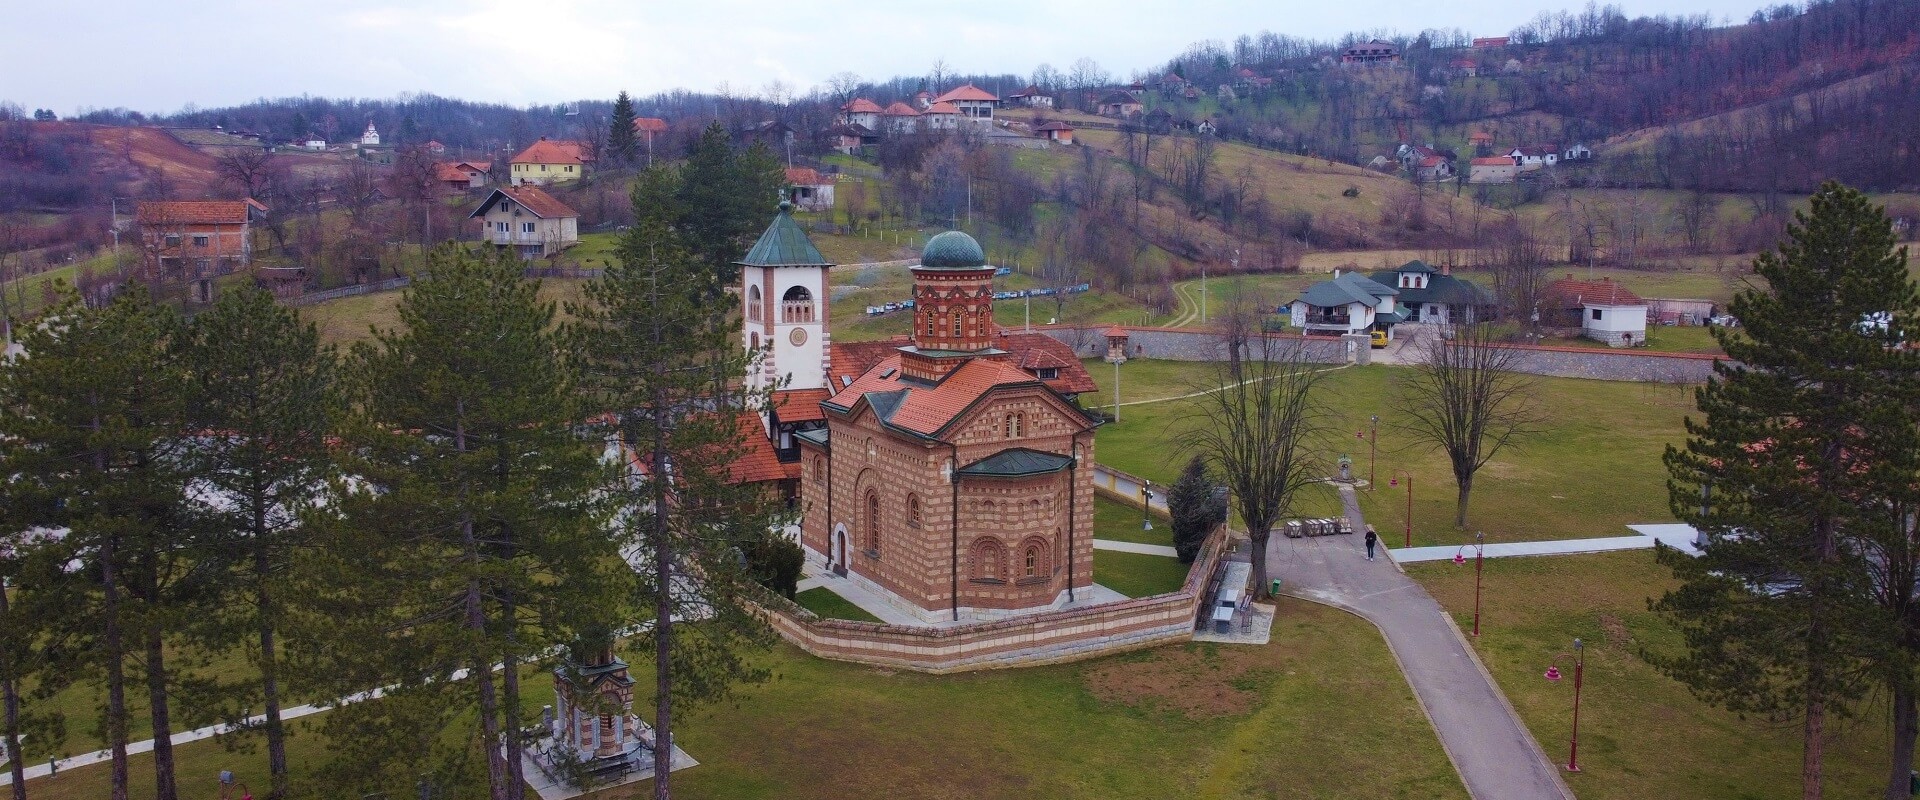 lelic monastery